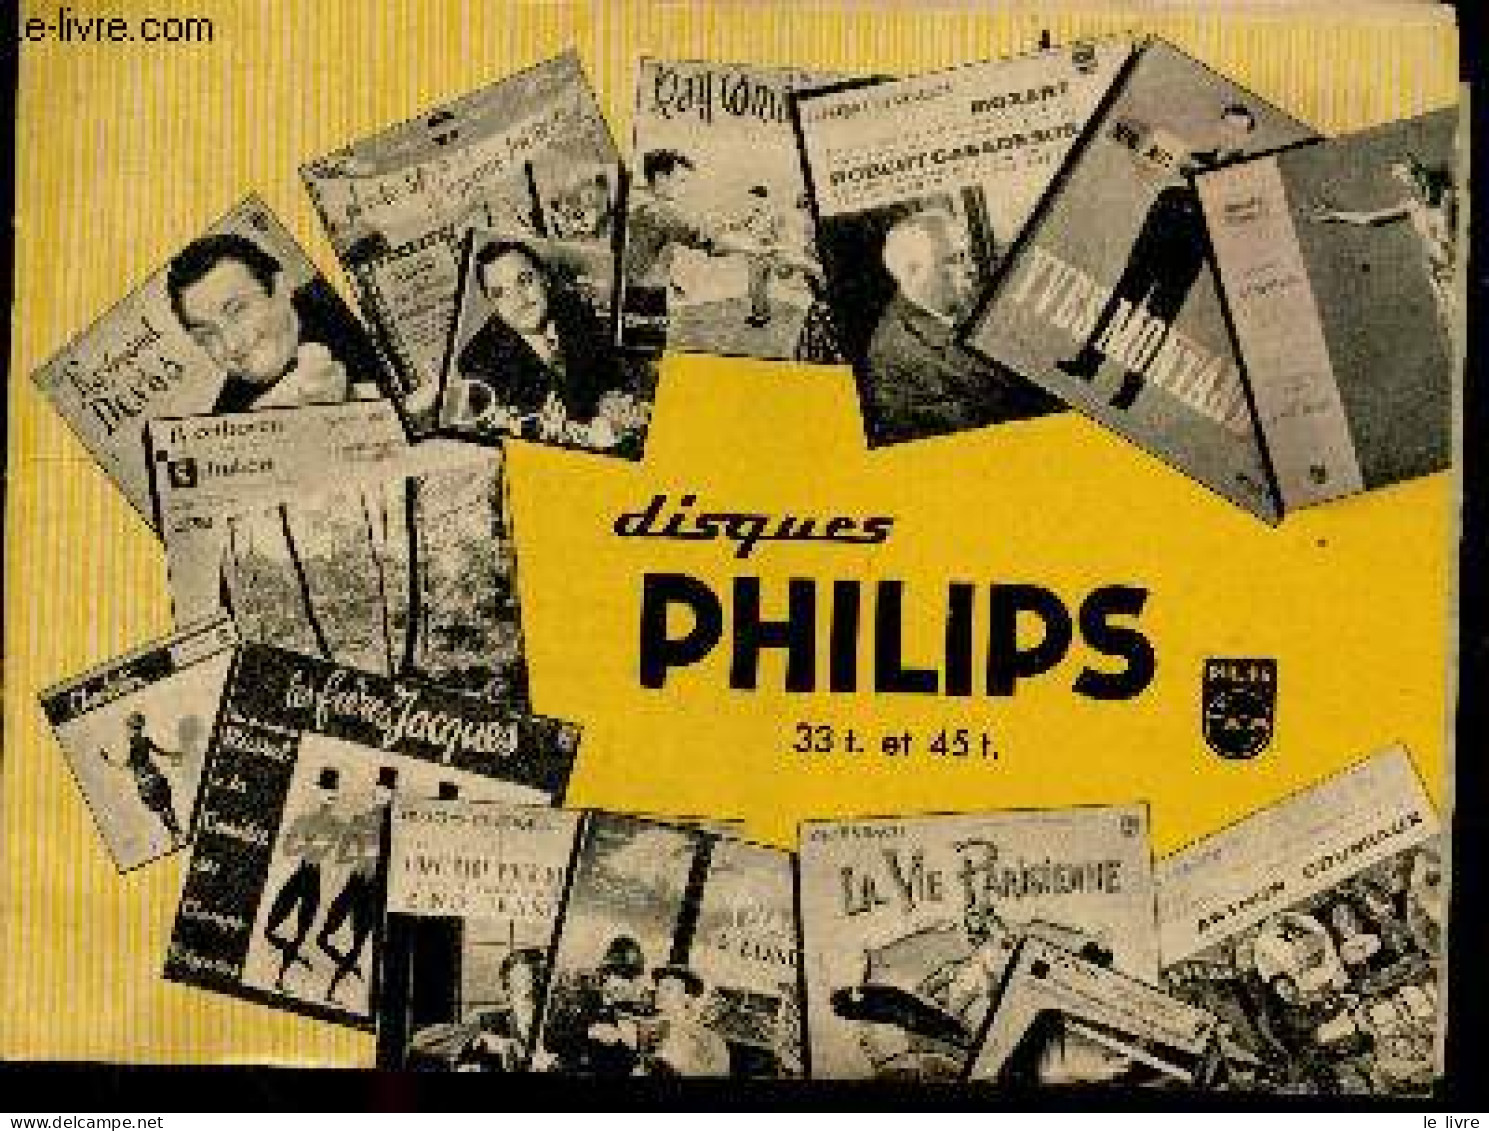 Disques Philips 33T. Et 45T. - Livret Publicitaire - Classiques Pour Tous, Operettes, Theatre Pour Tous, Jazz, Opera, Ch - Music